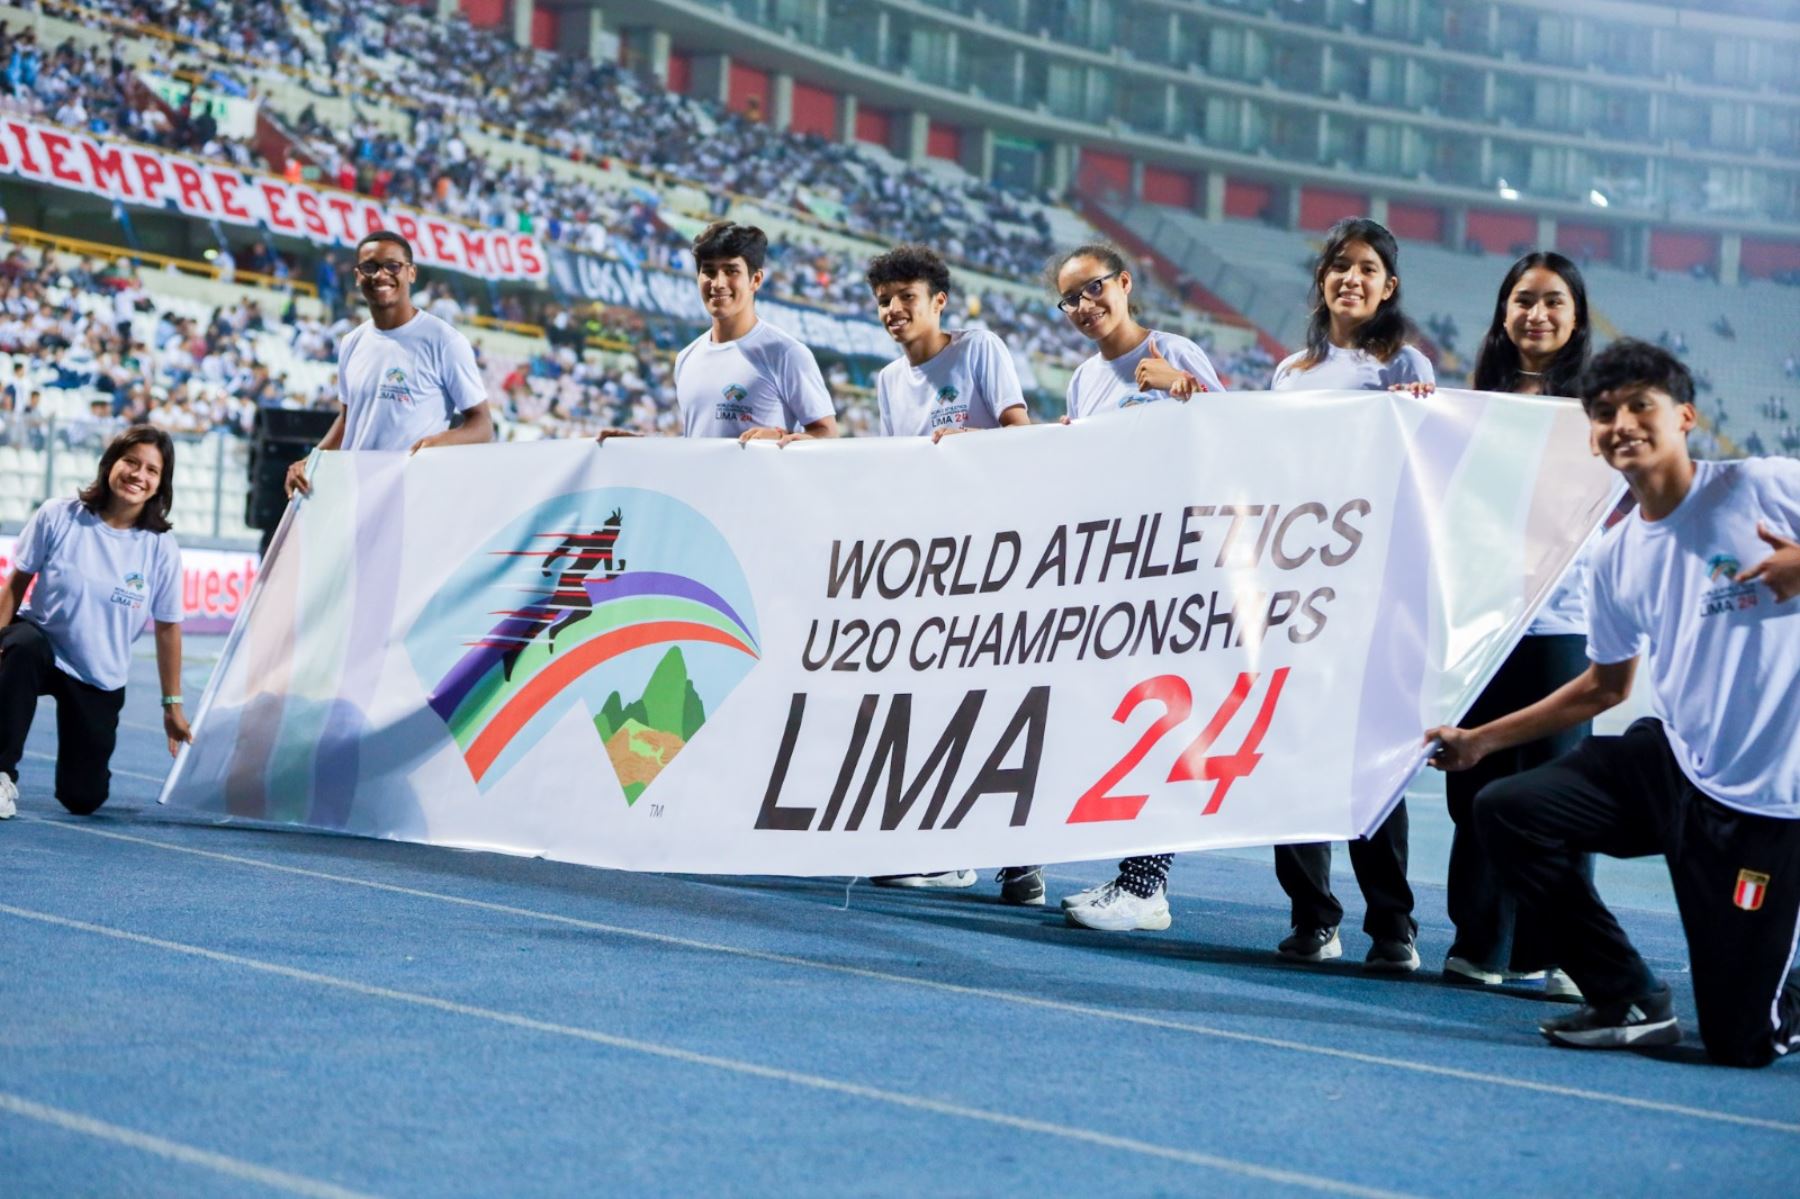 Lima albergará el el Campeonato Mundial de Atletismo U20